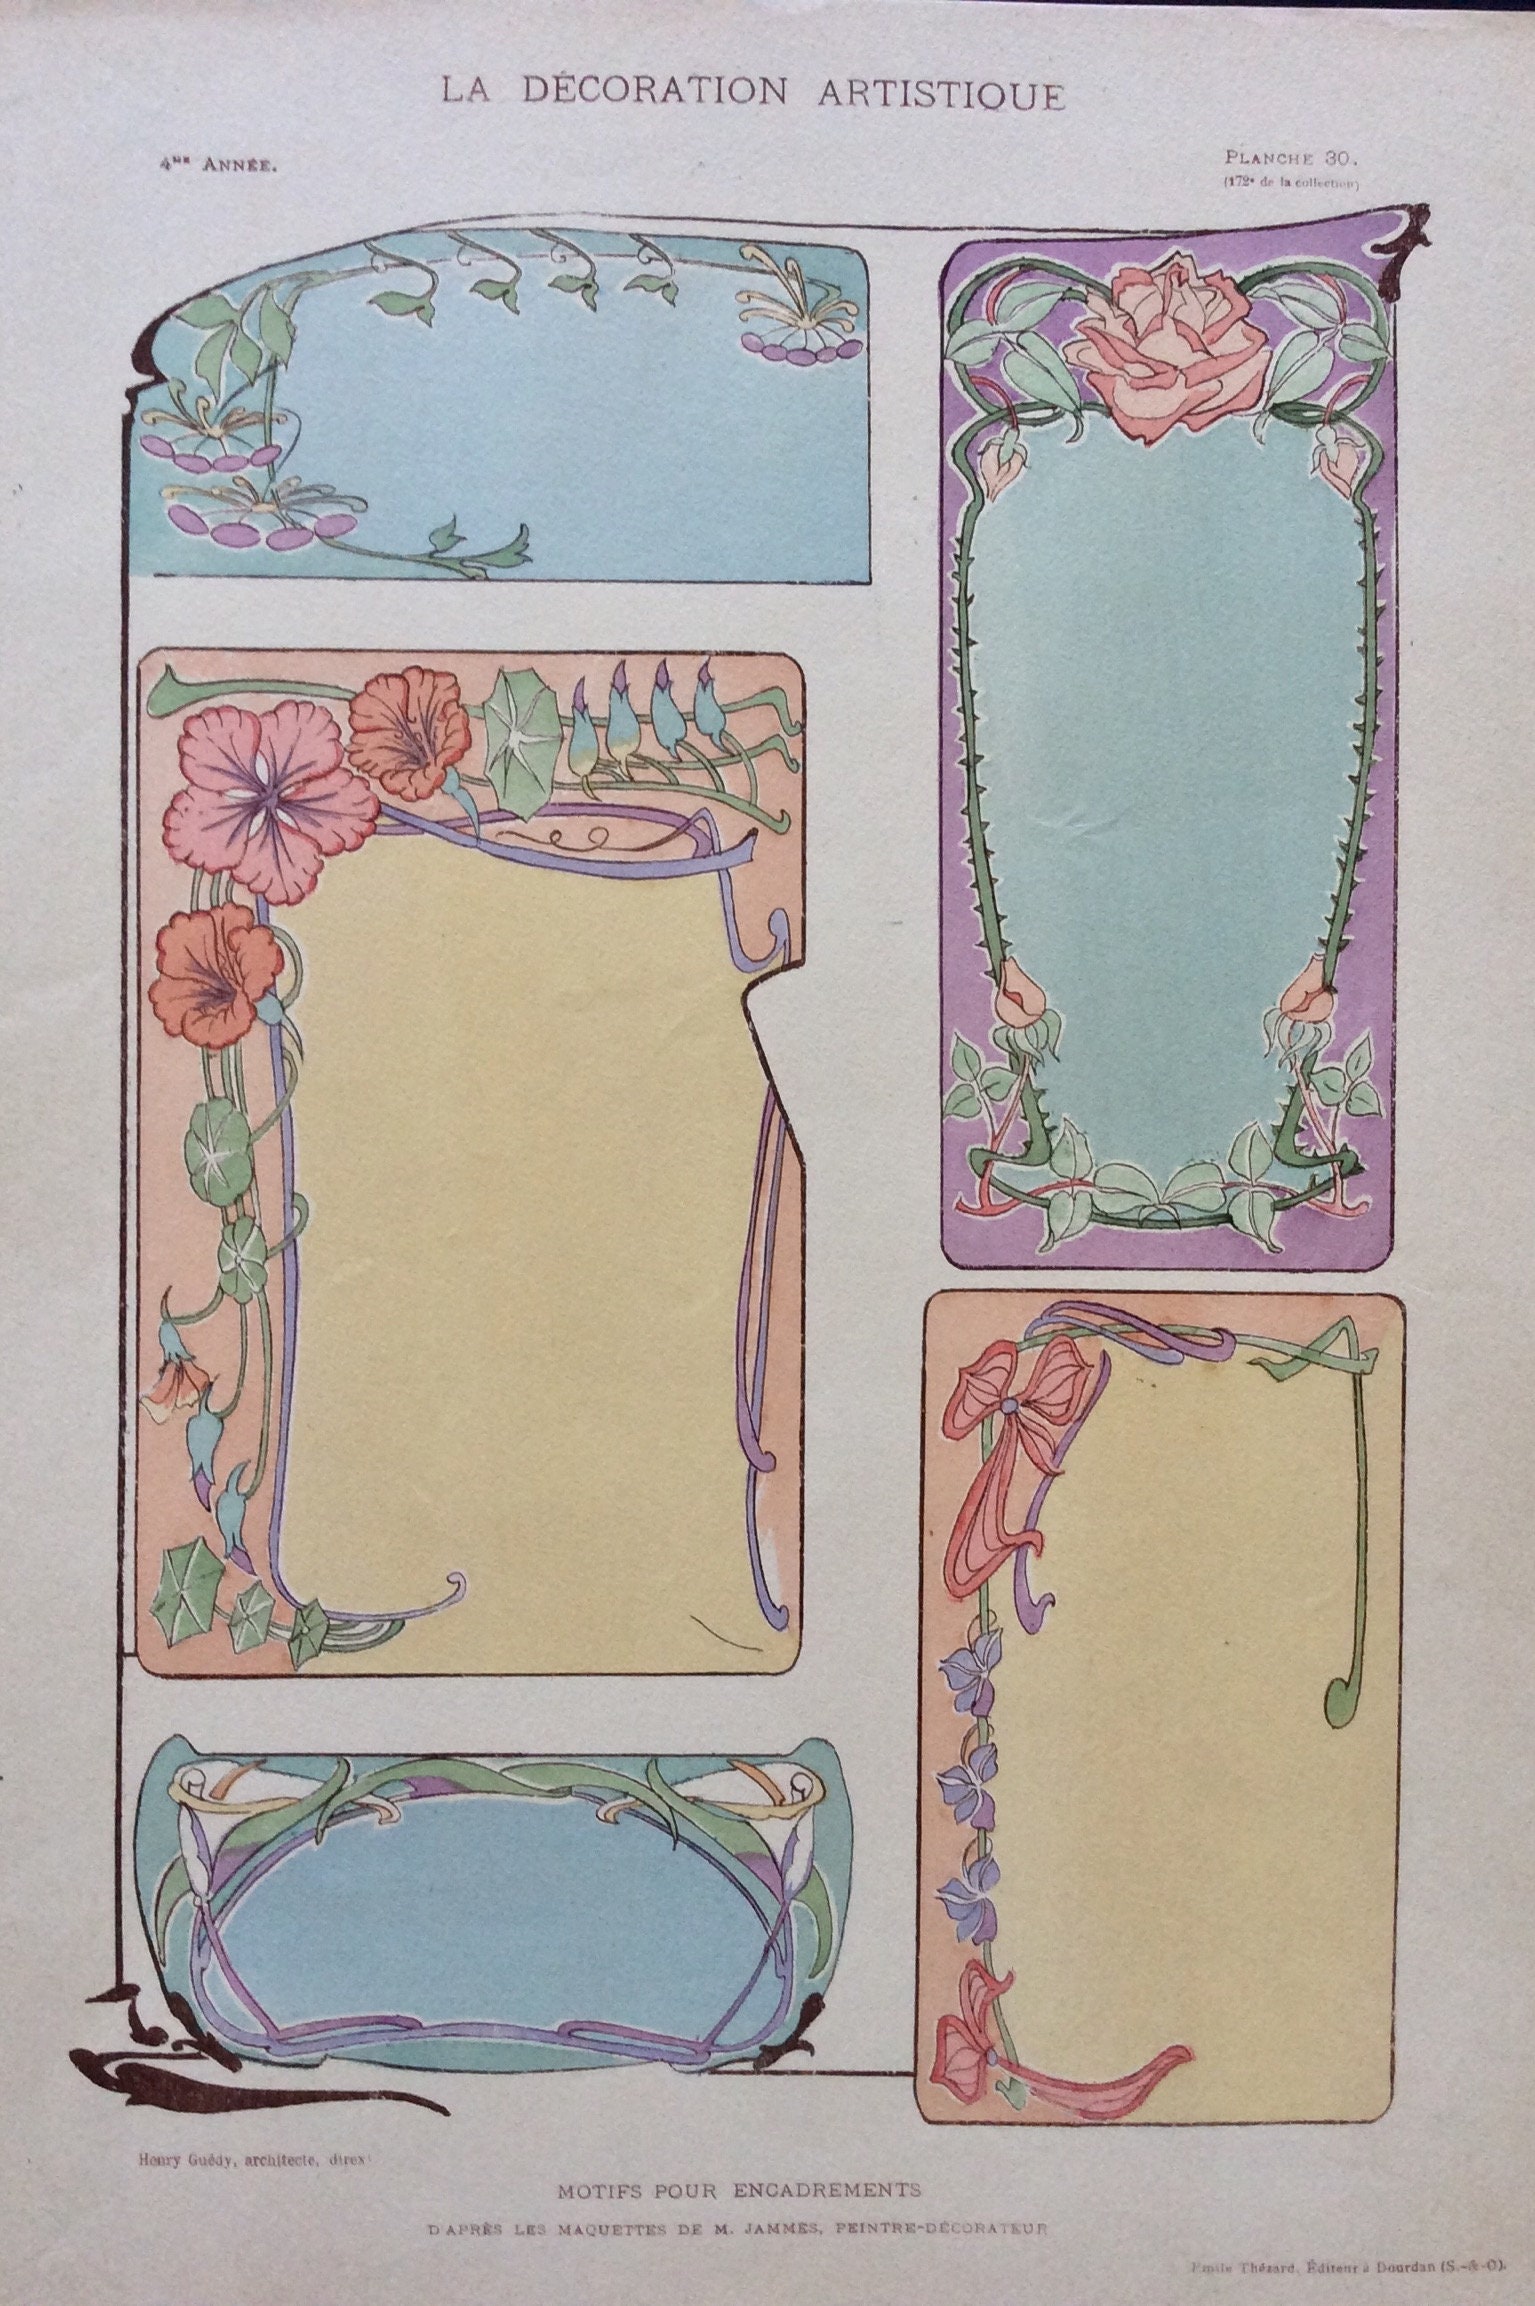 Rare 1908 Original Art Nouveau French Pochoir Antique Print Henry Guedy LA DECORATION ARTISTIQUE Periodical Folio Plate Th\u00e9zard Decorating